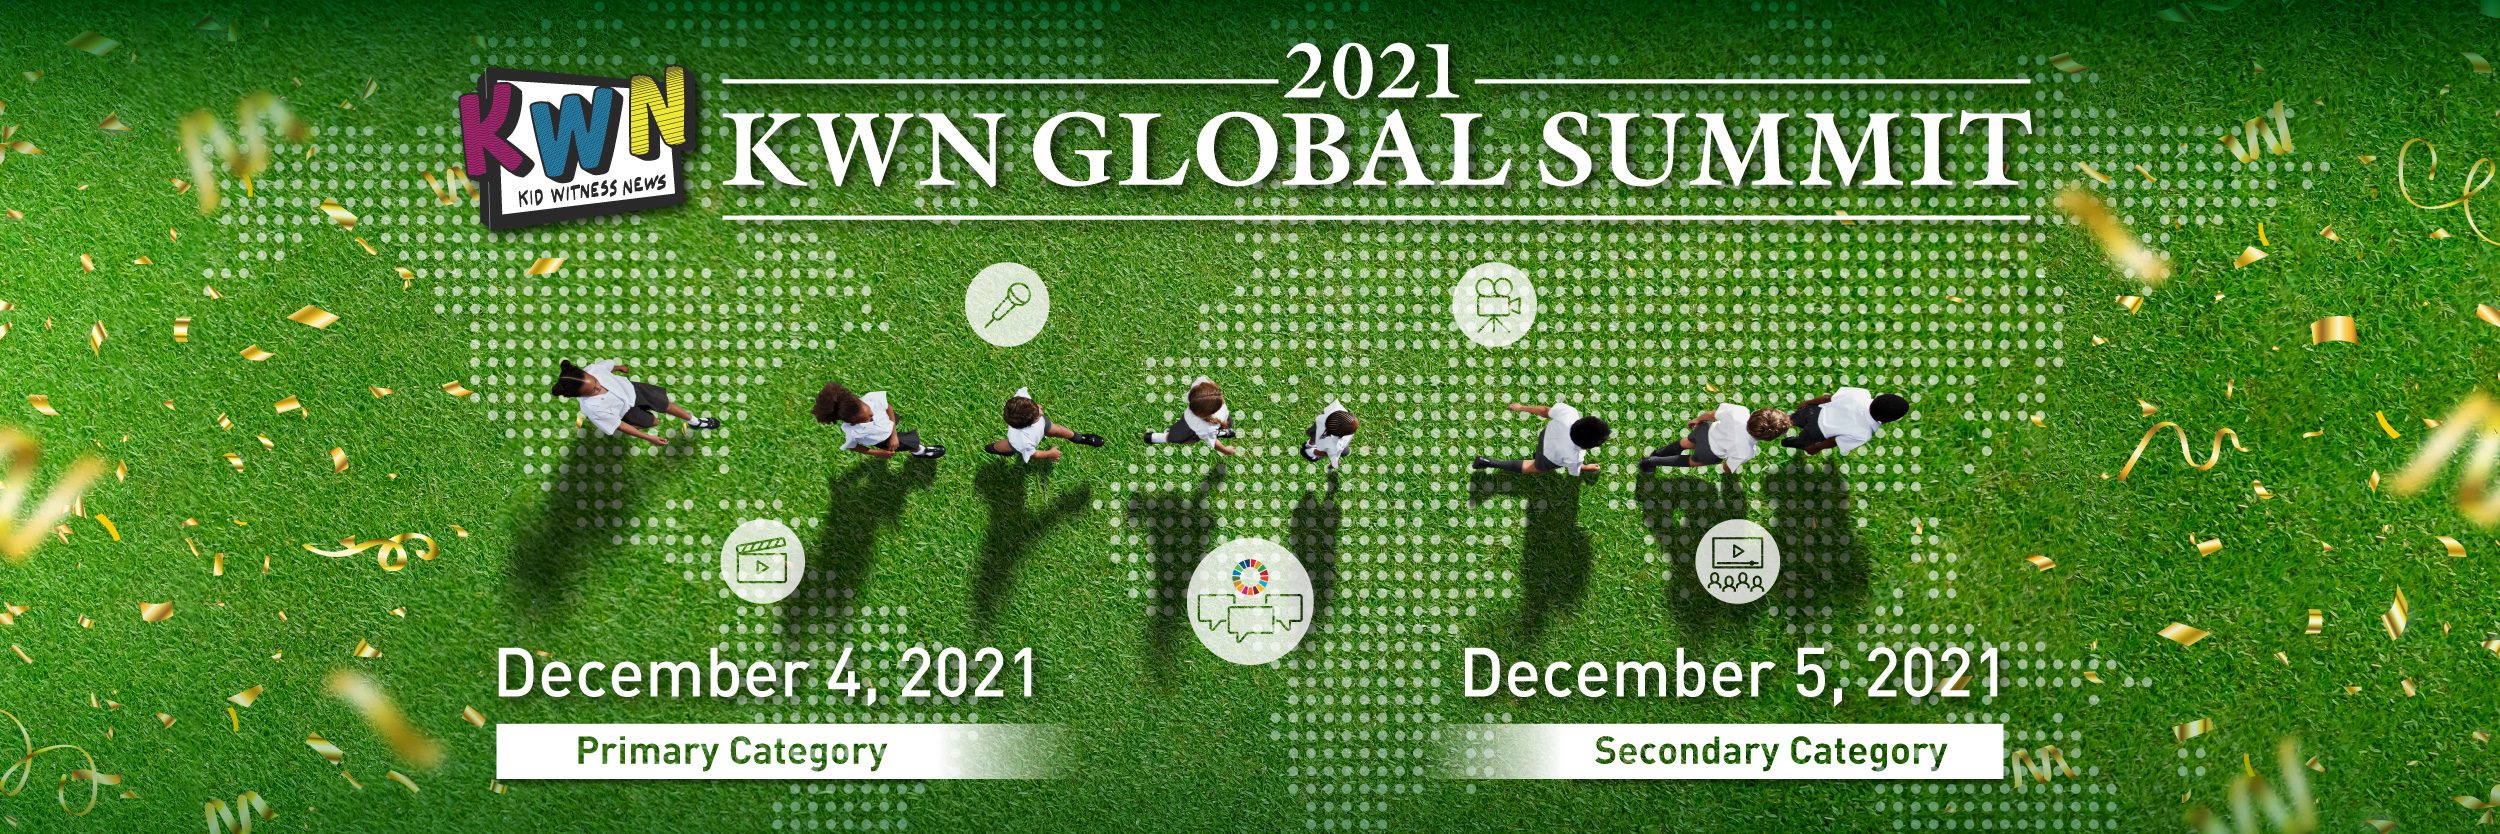 KWN Global Summi 2021